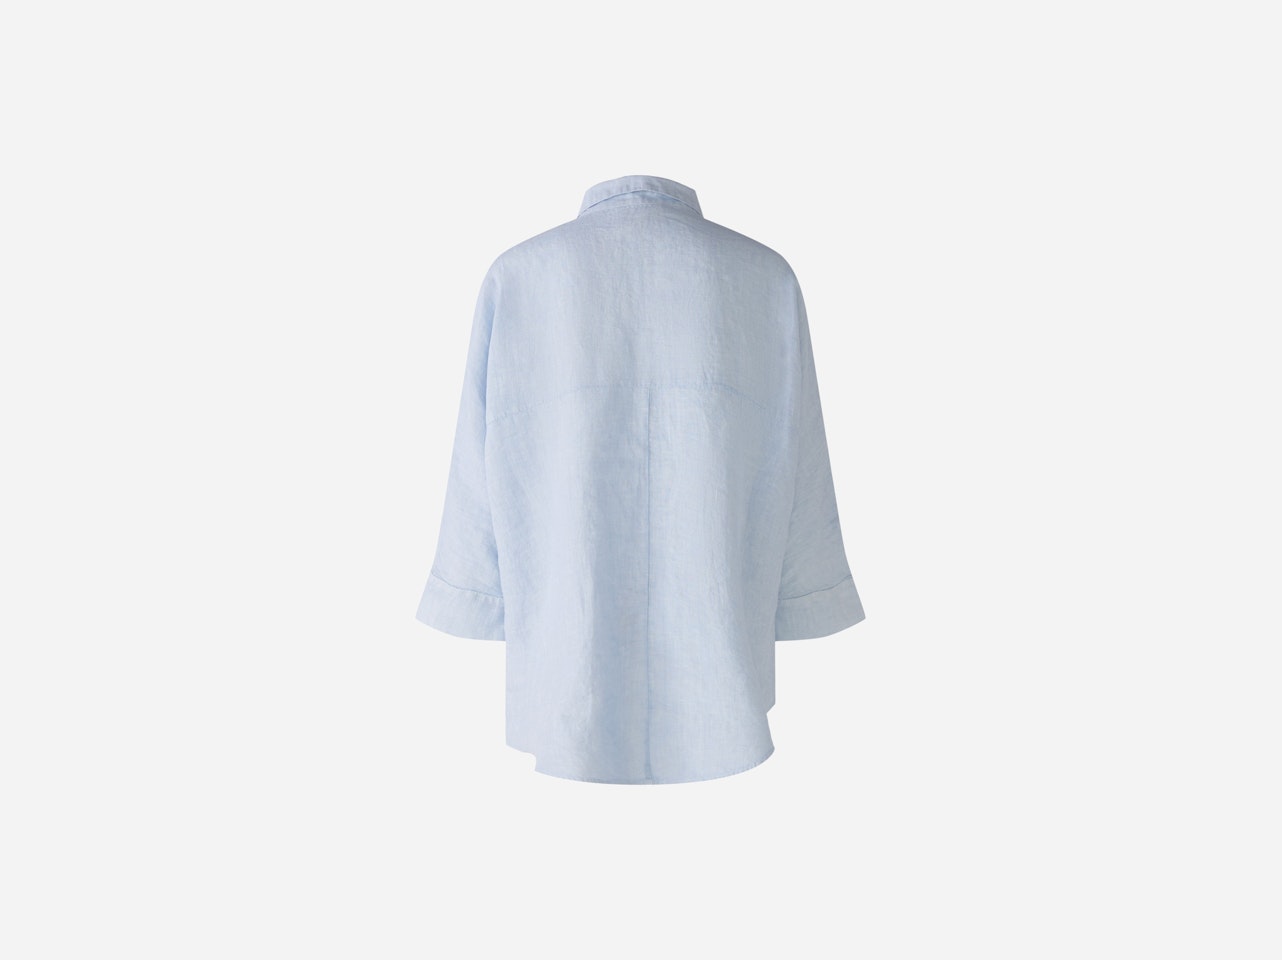 Bild 8 von Shirt blouse 100% linen in kentucky blue | Oui